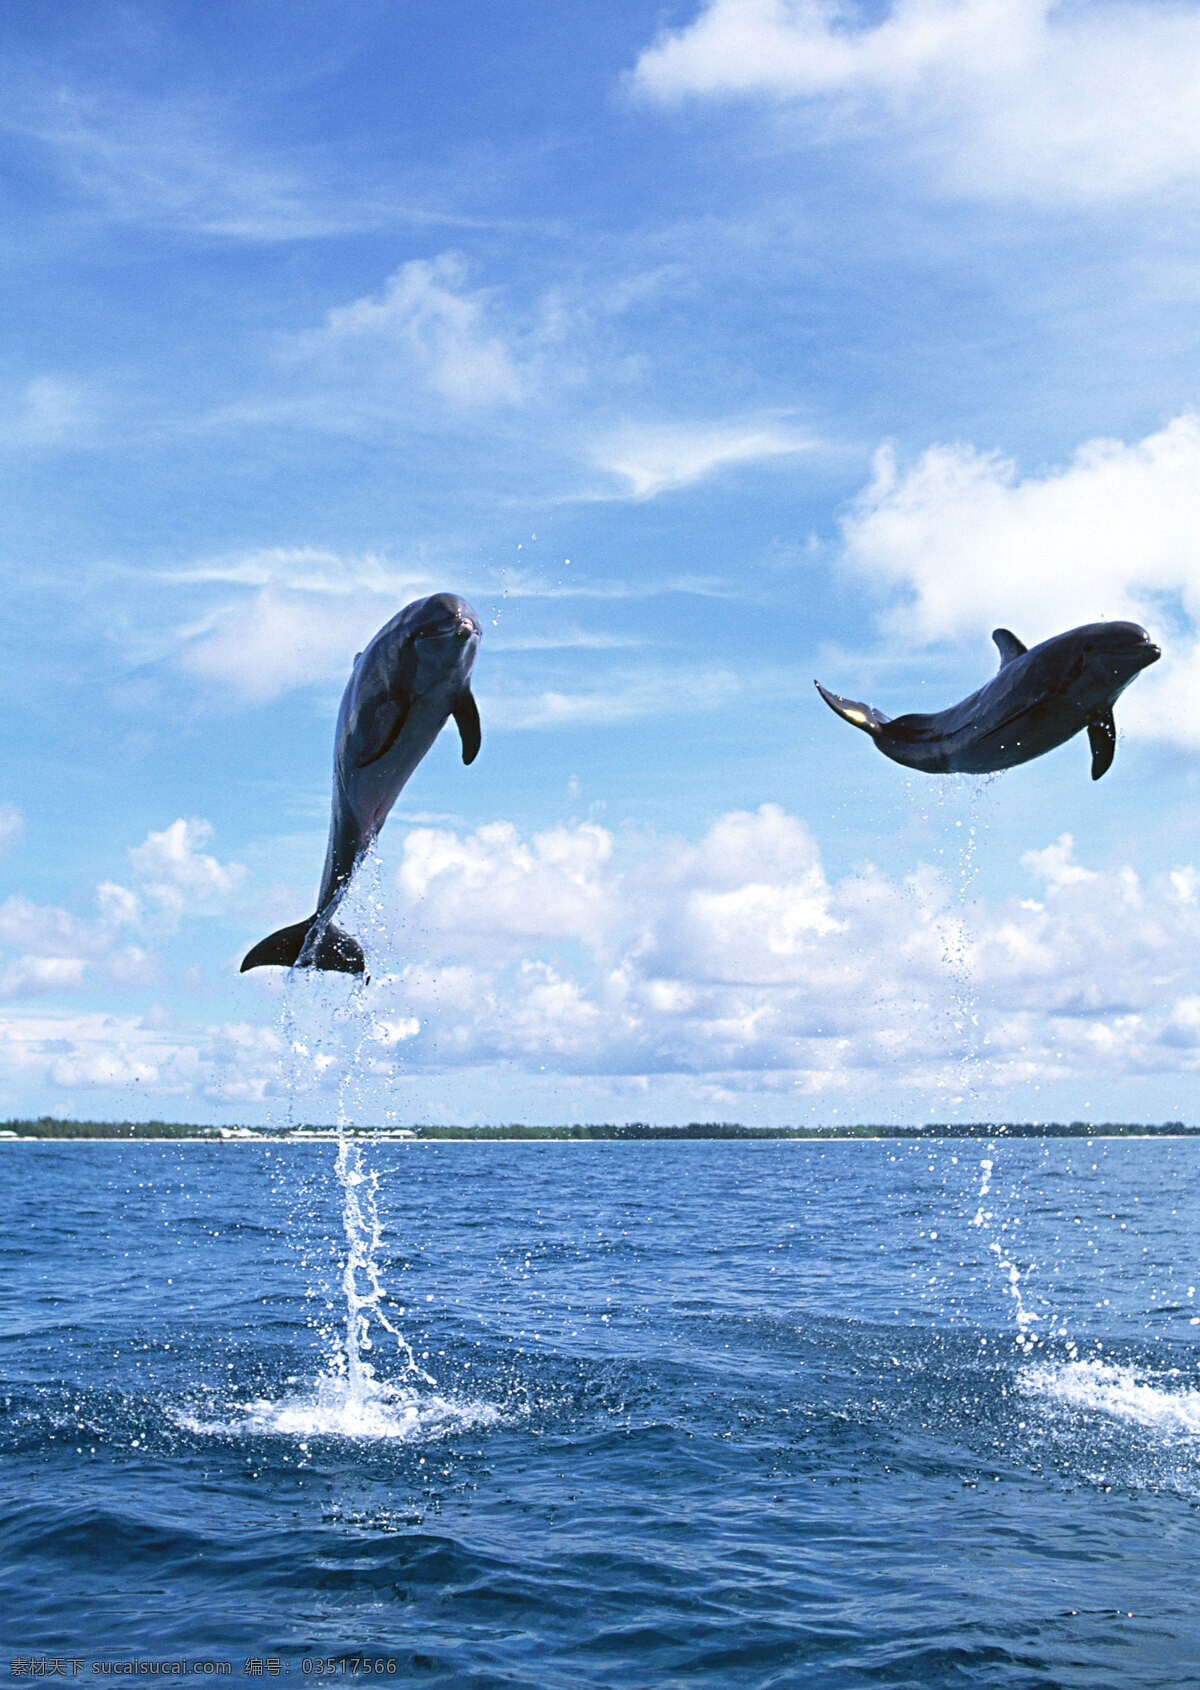 水中 跃起 海豚 动物世界 生物世界 海底生物 大海 水中生物 海面